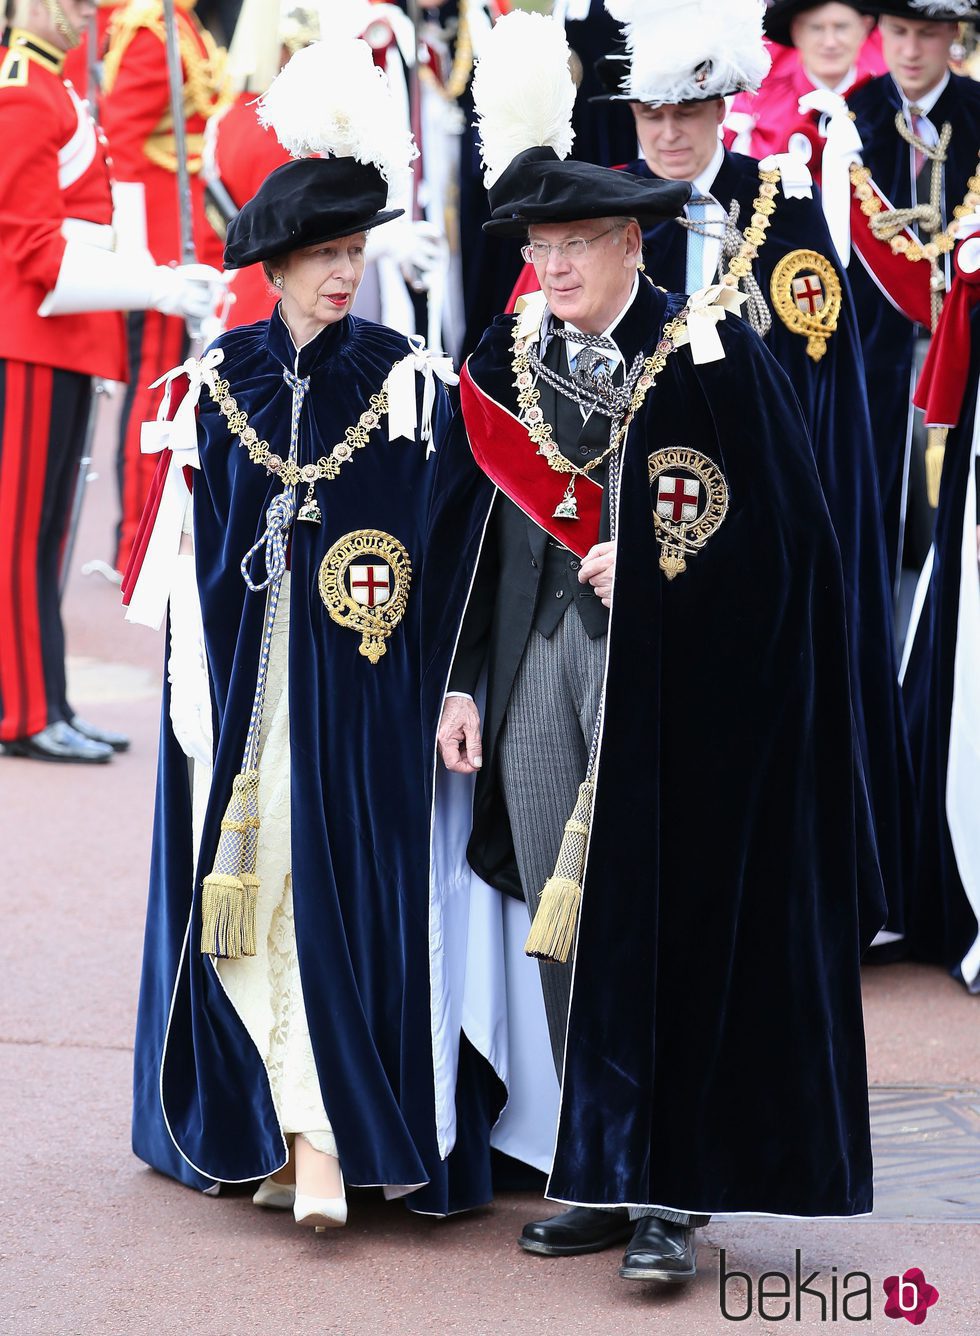 La Princesa Ana y el Duque de Gloucester en la ceremonia de la Orden de la Jarretera 2015